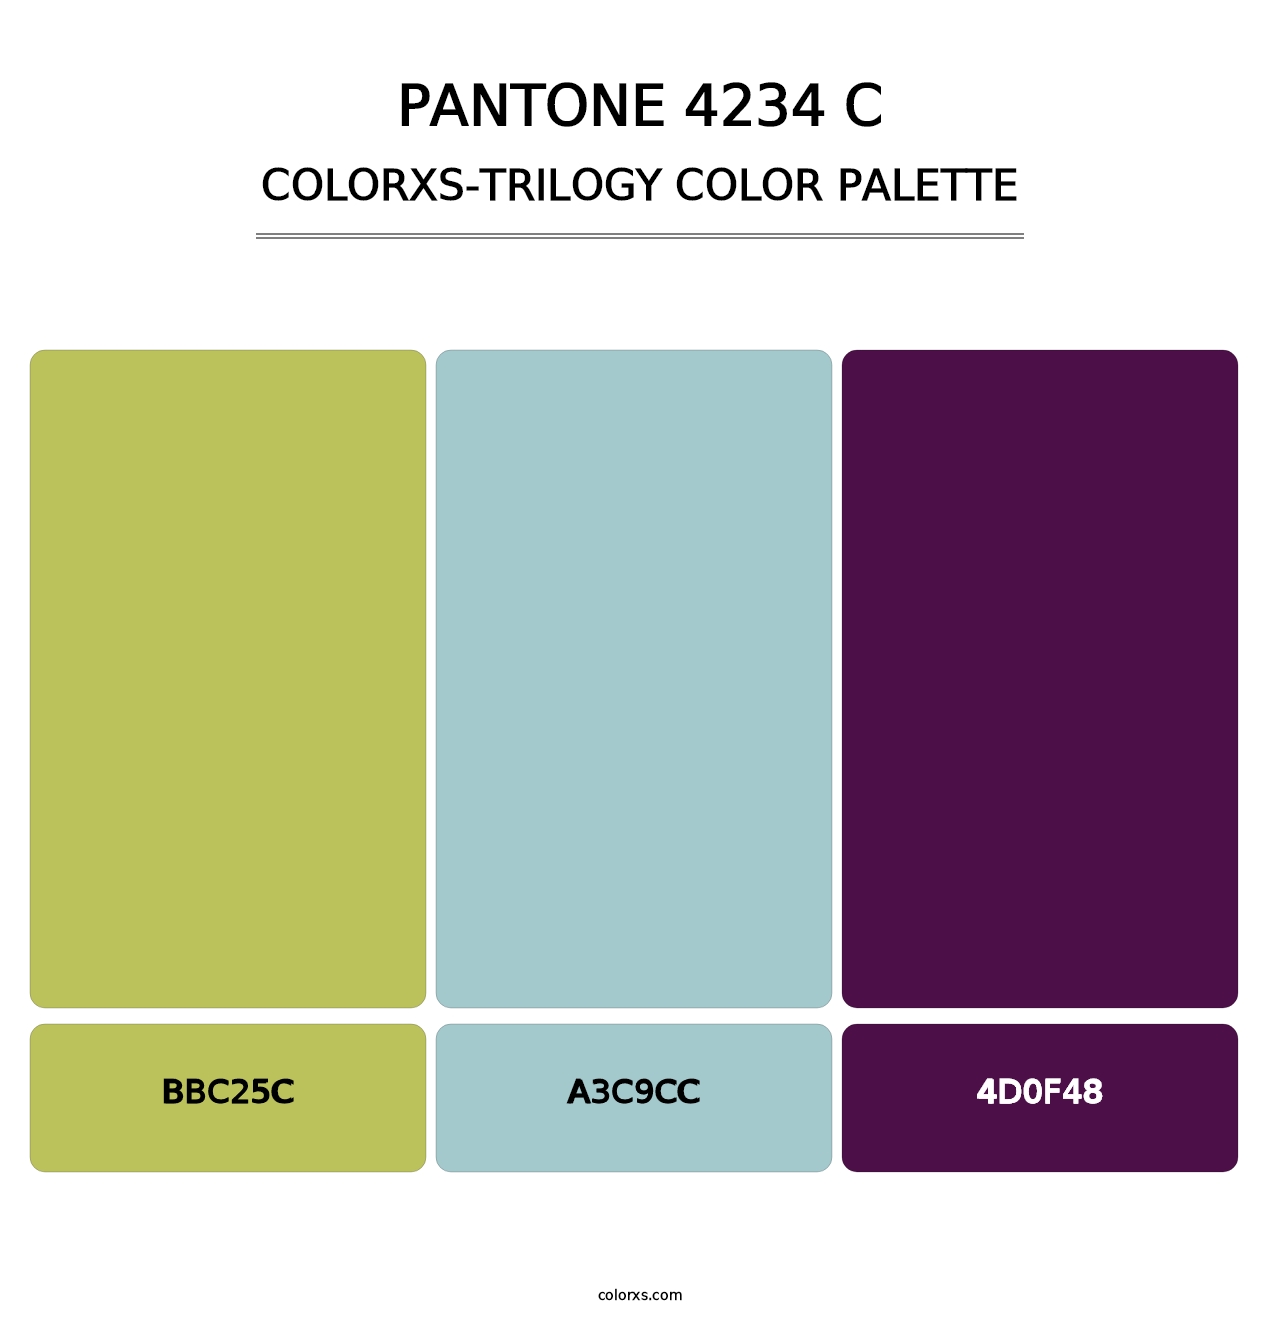 PANTONE 4234 C - Colorxs Trilogy Palette